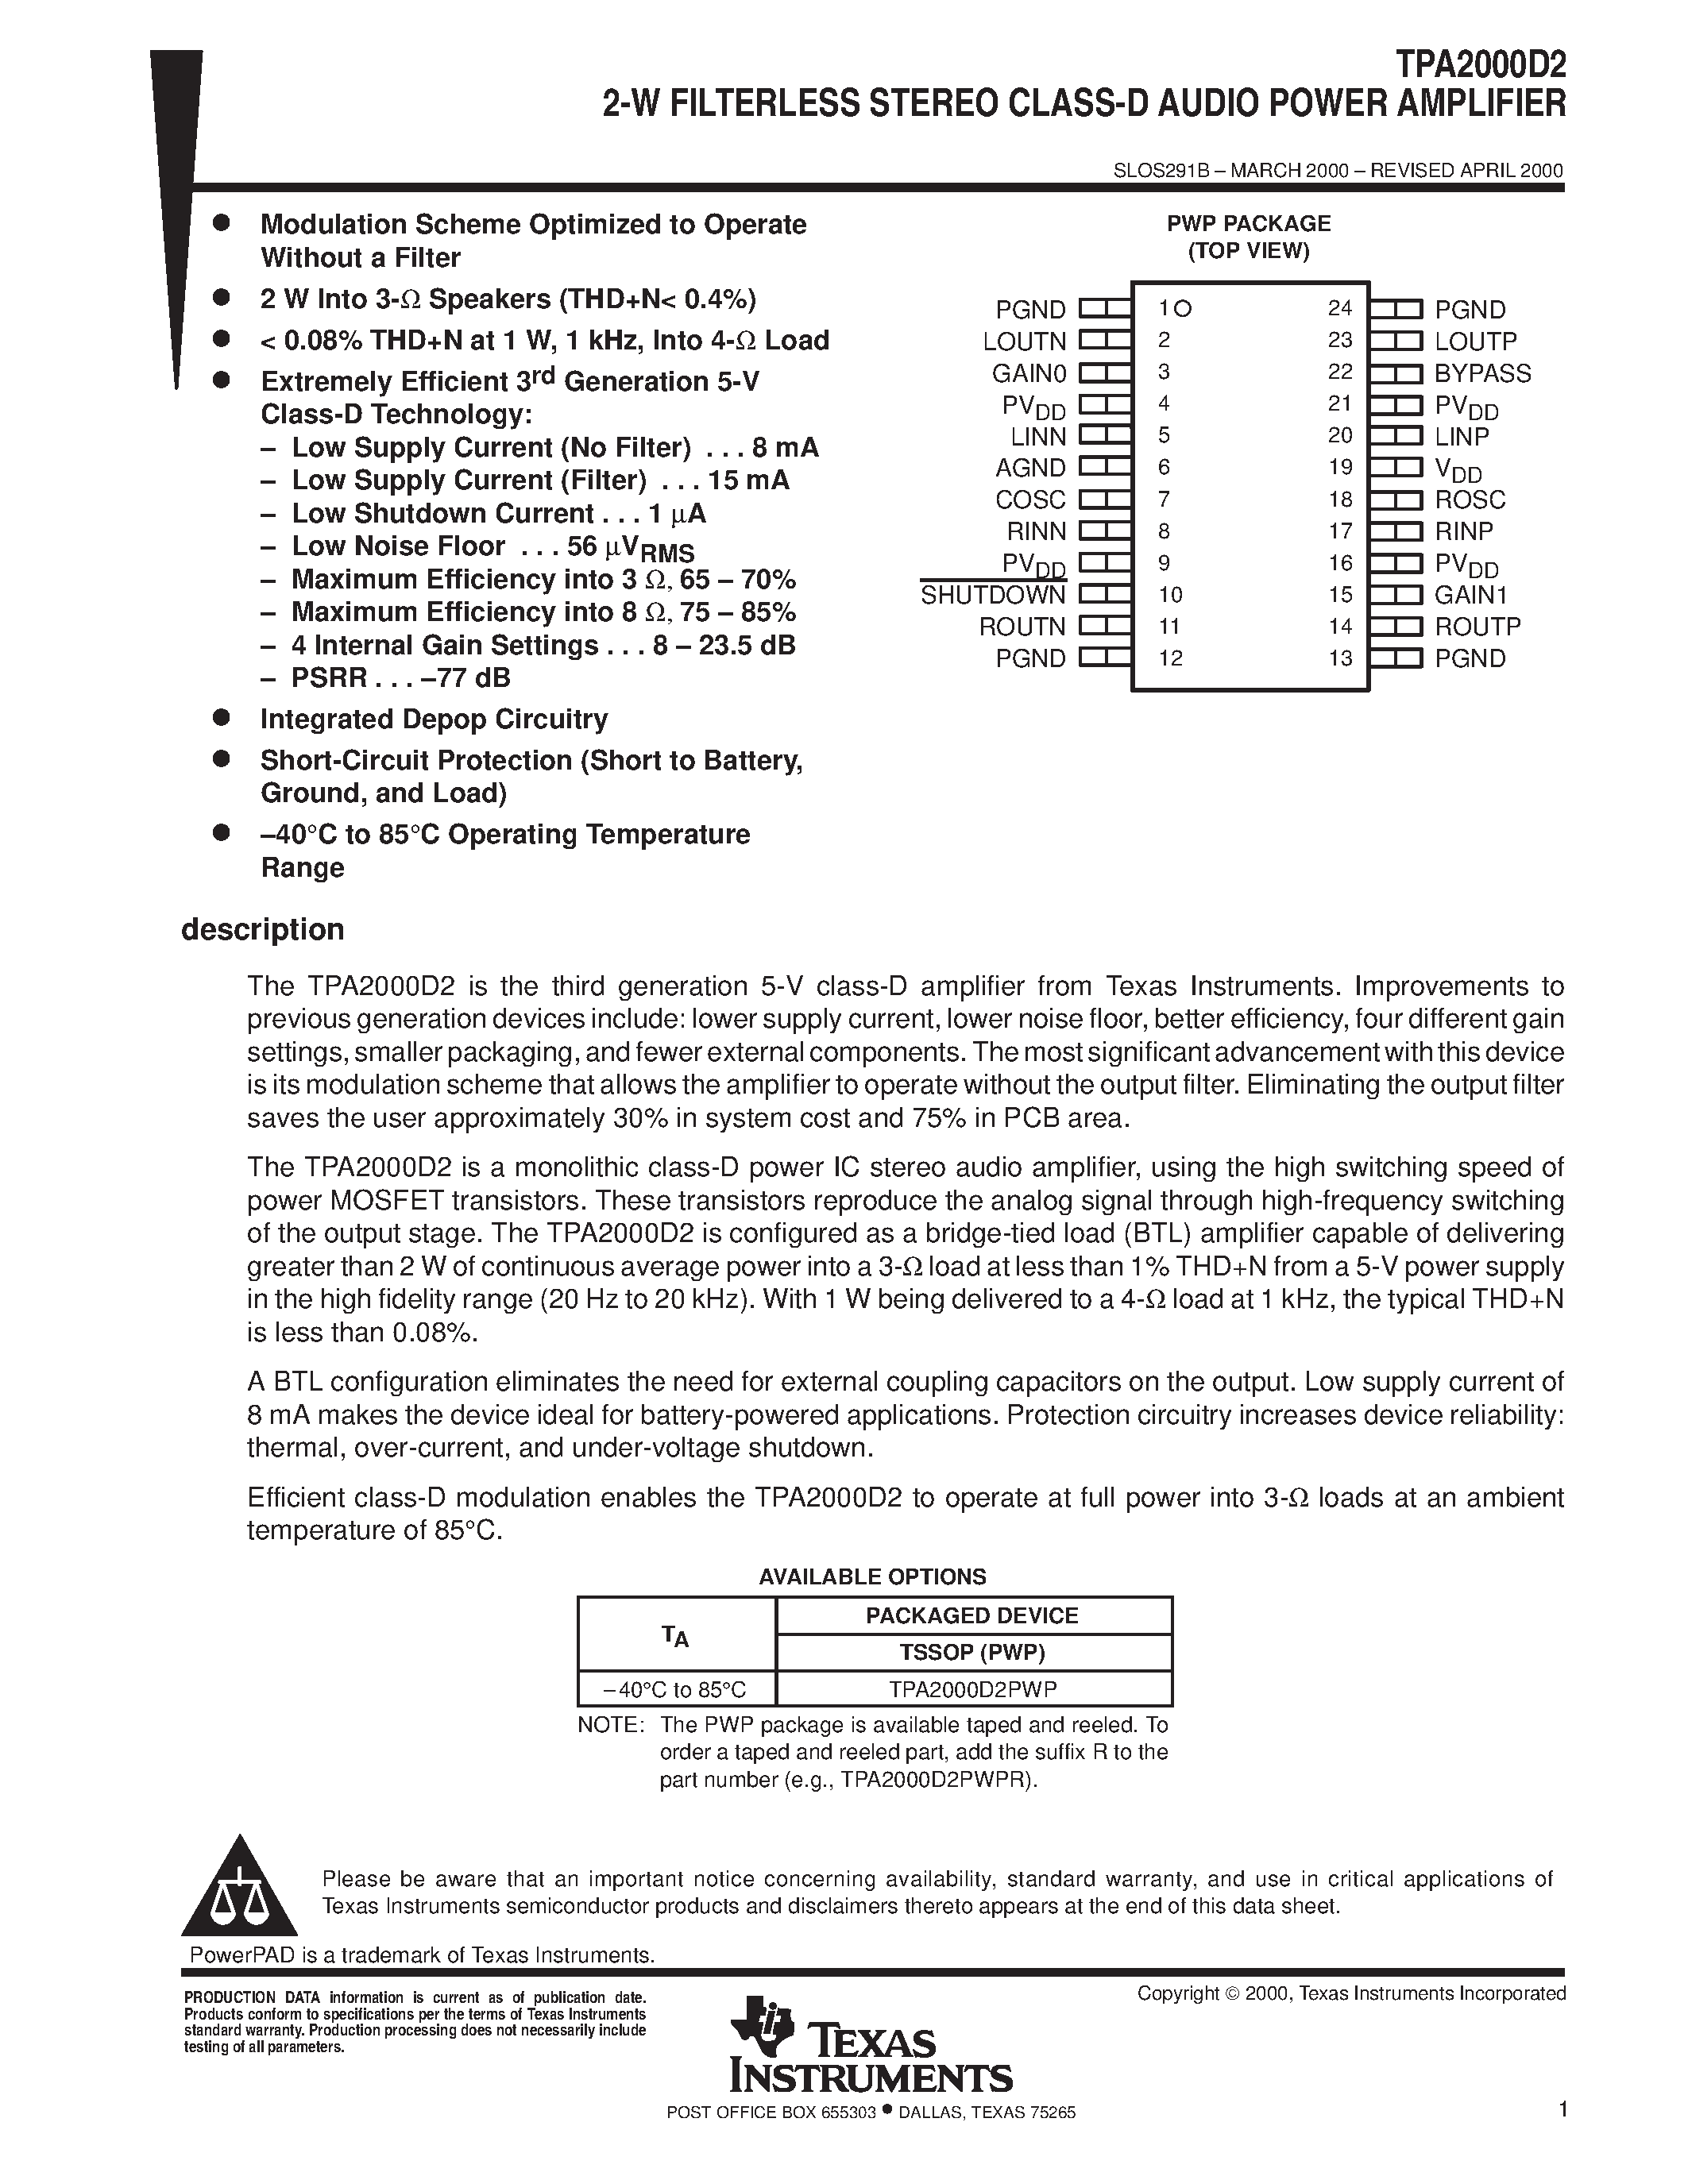 Datasheet TPA2000D2 - 2-W FILTERLESS STEREO CLASS-D AUDIO POWER AMPLIFIER page 1